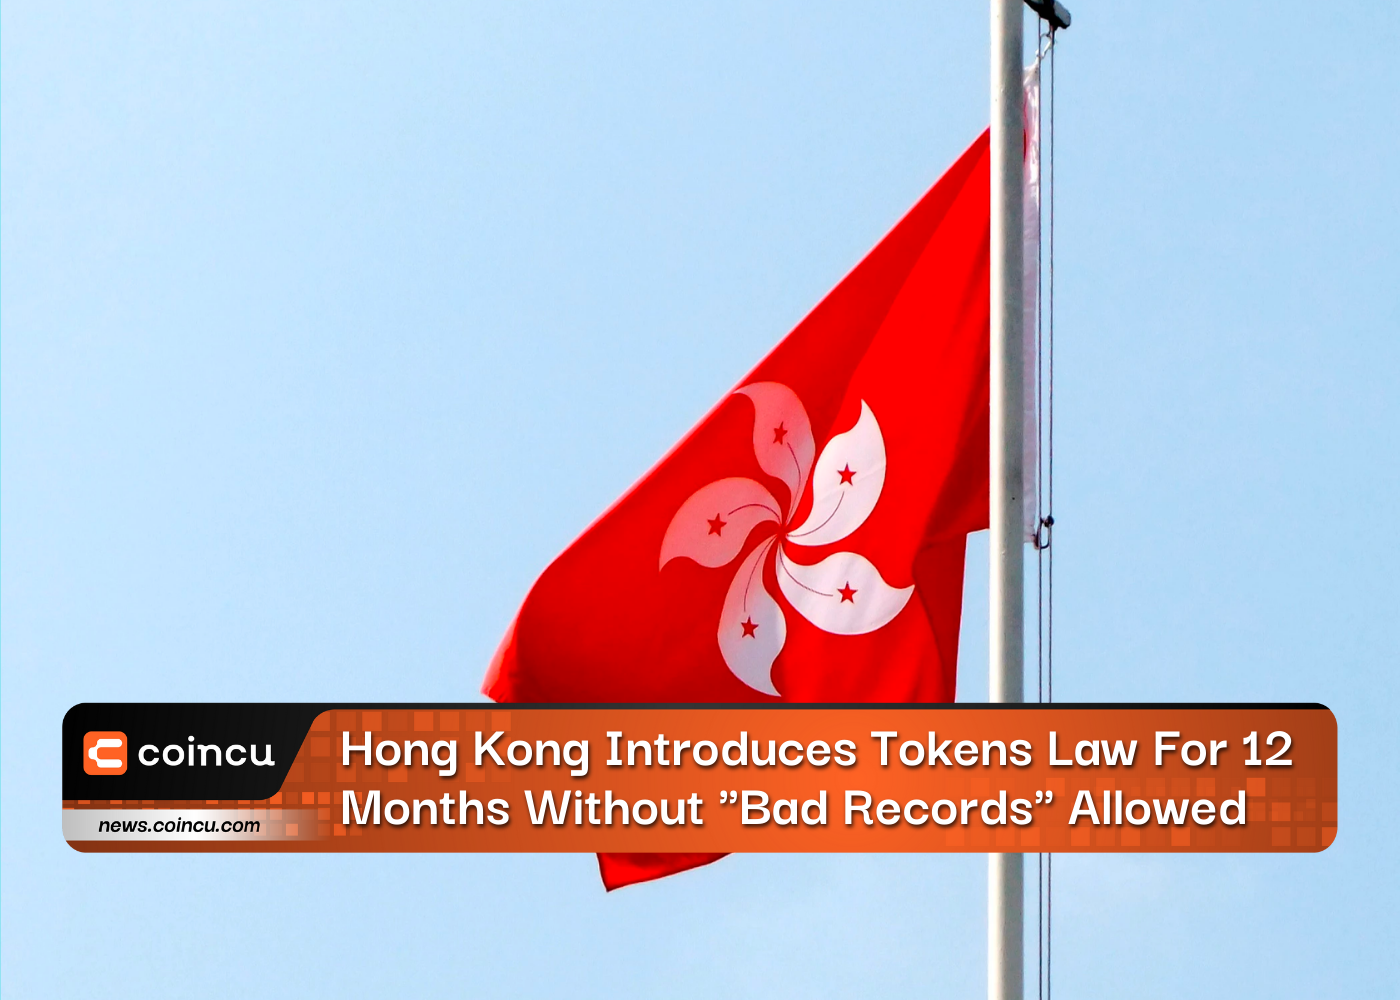 홍콩은 "나쁜 기록"을 허용하지 않고 12개월 동안 토큰 법을 도입합니다.